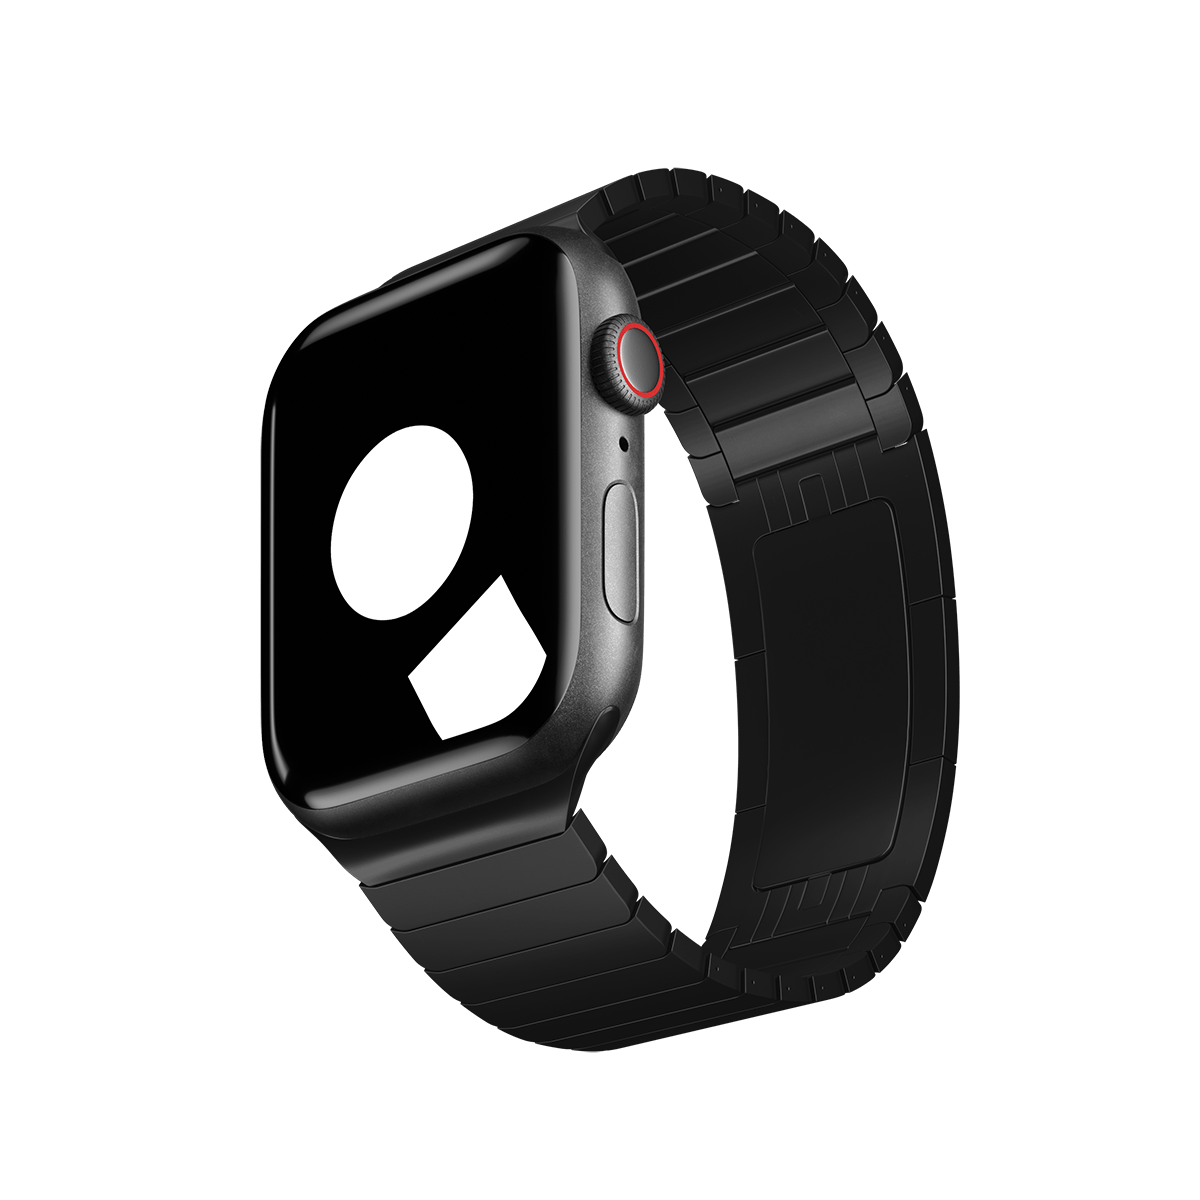 Apple watch strap 38mm titanium space black link bracelet - Accessories -  1741530587